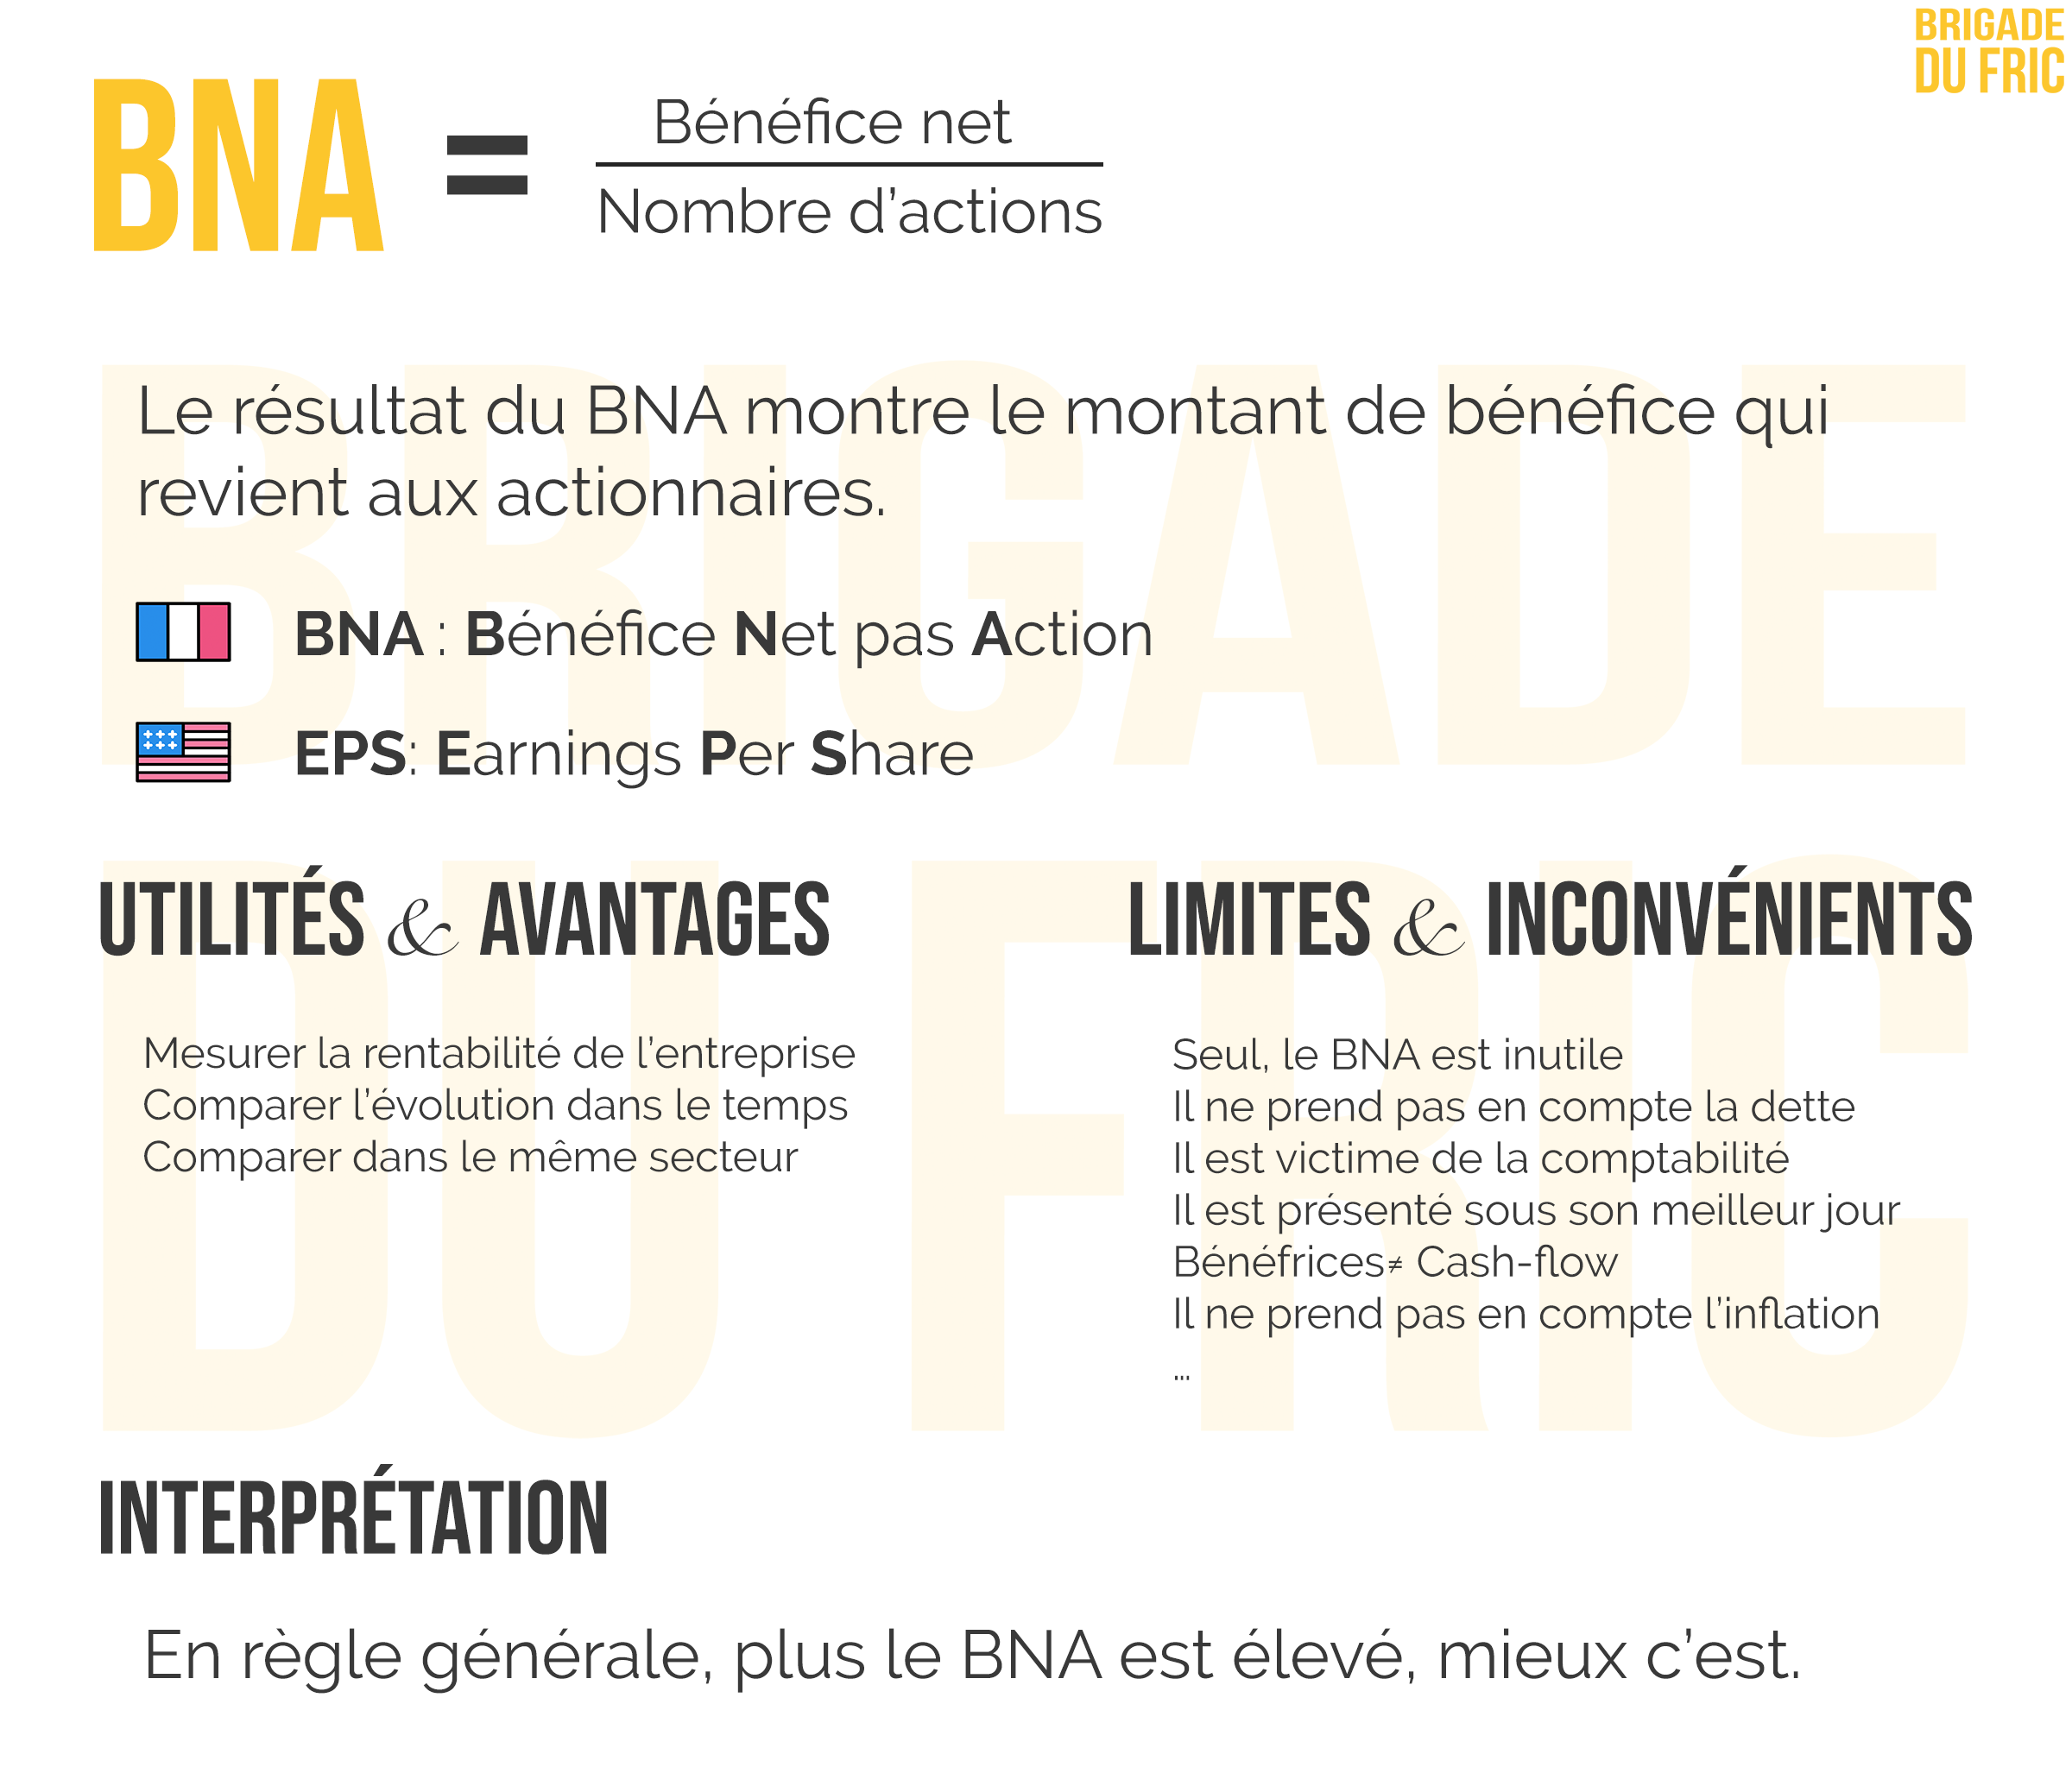 Bourse BNA - Bénéfice Net par Action - fiche résumé